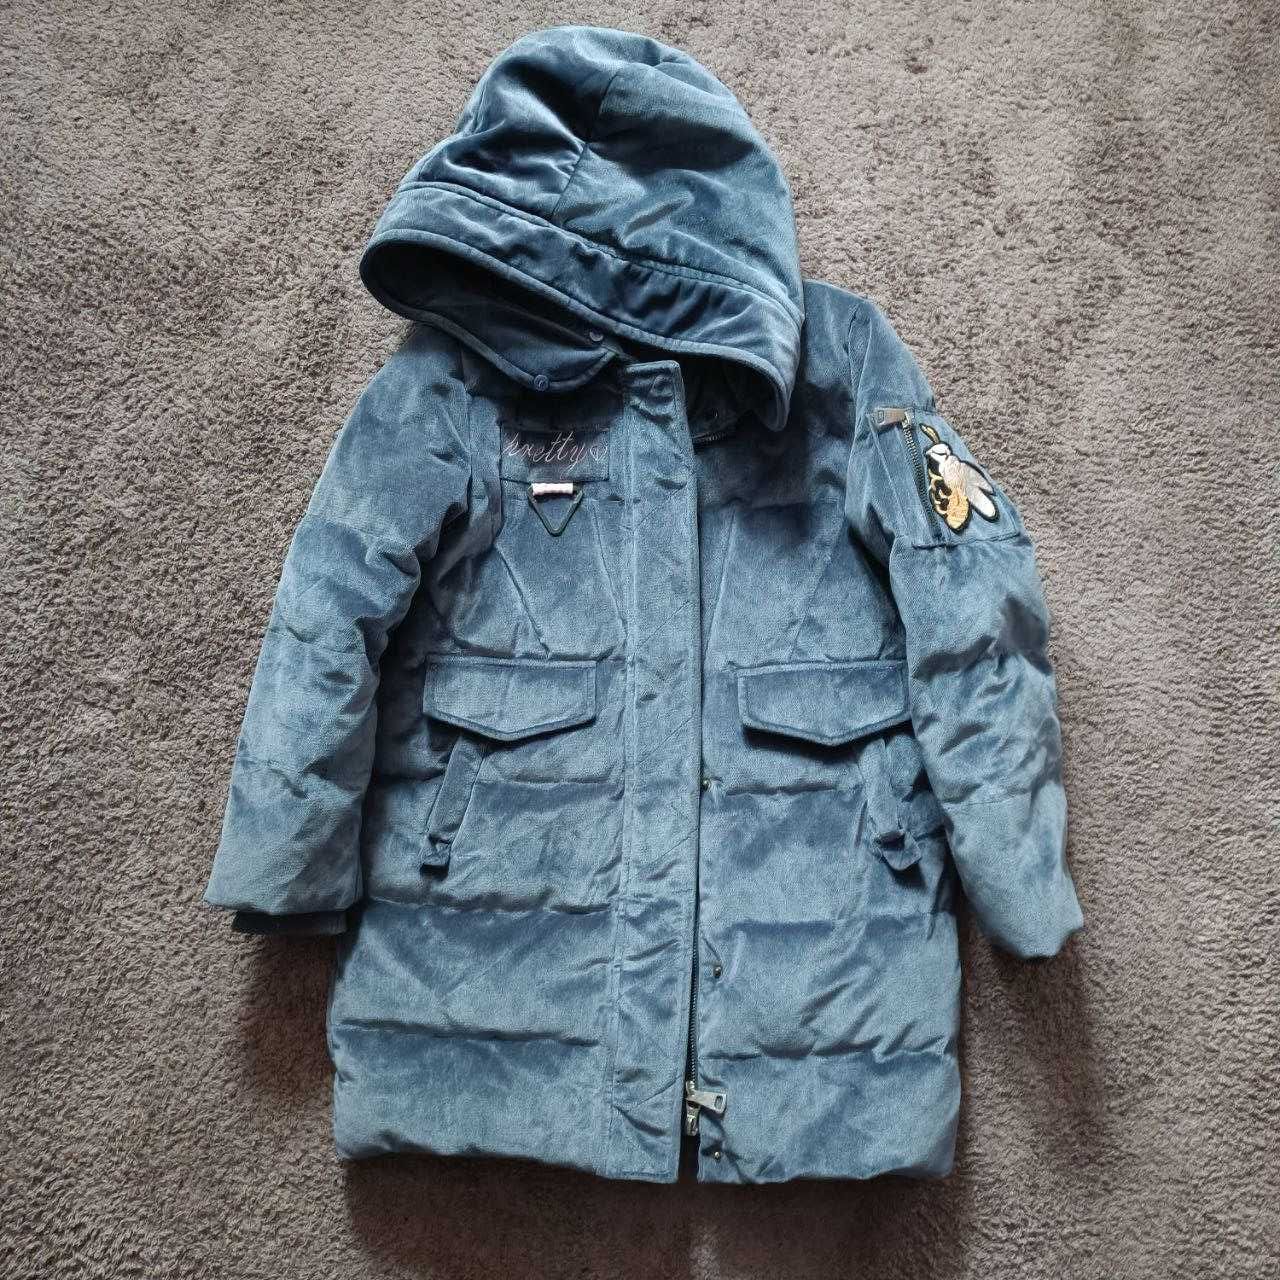 Куртка детская дитяча пуховик дитячий для девочек дівчинки зима зимняя